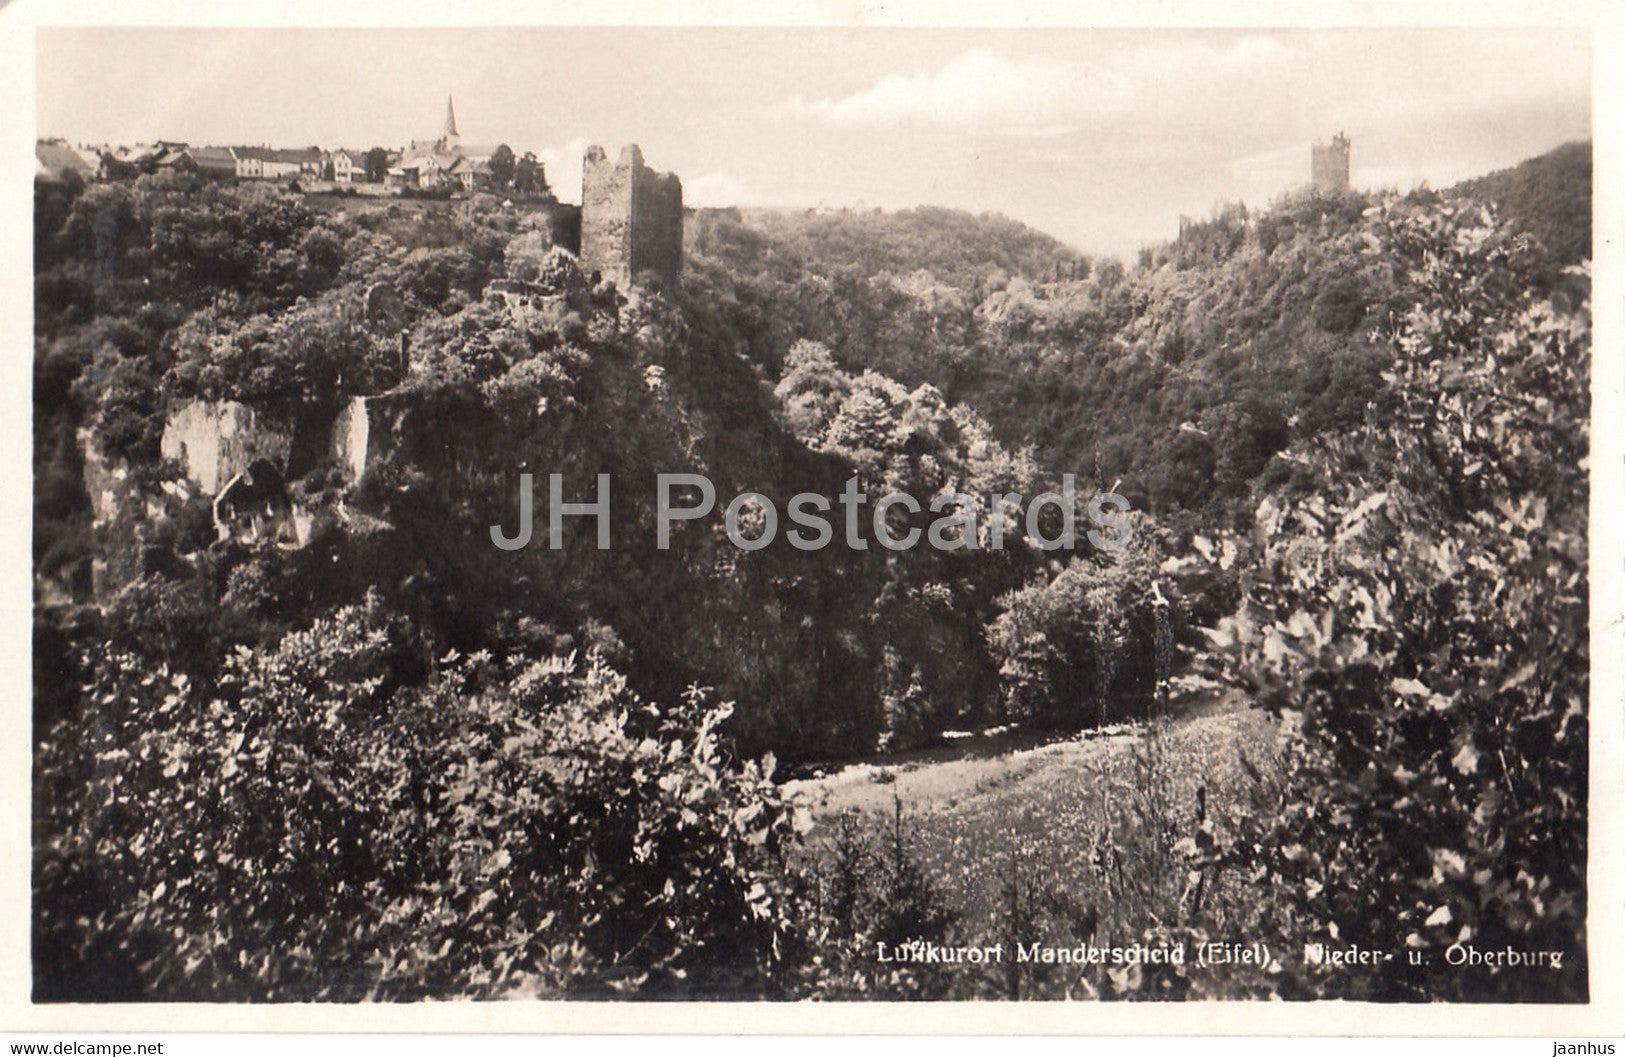 Luftkurort Manderscheid - Eifel - Nieder u Oberburg - 6711 - old postcard - Germany - unused - JH Postcards